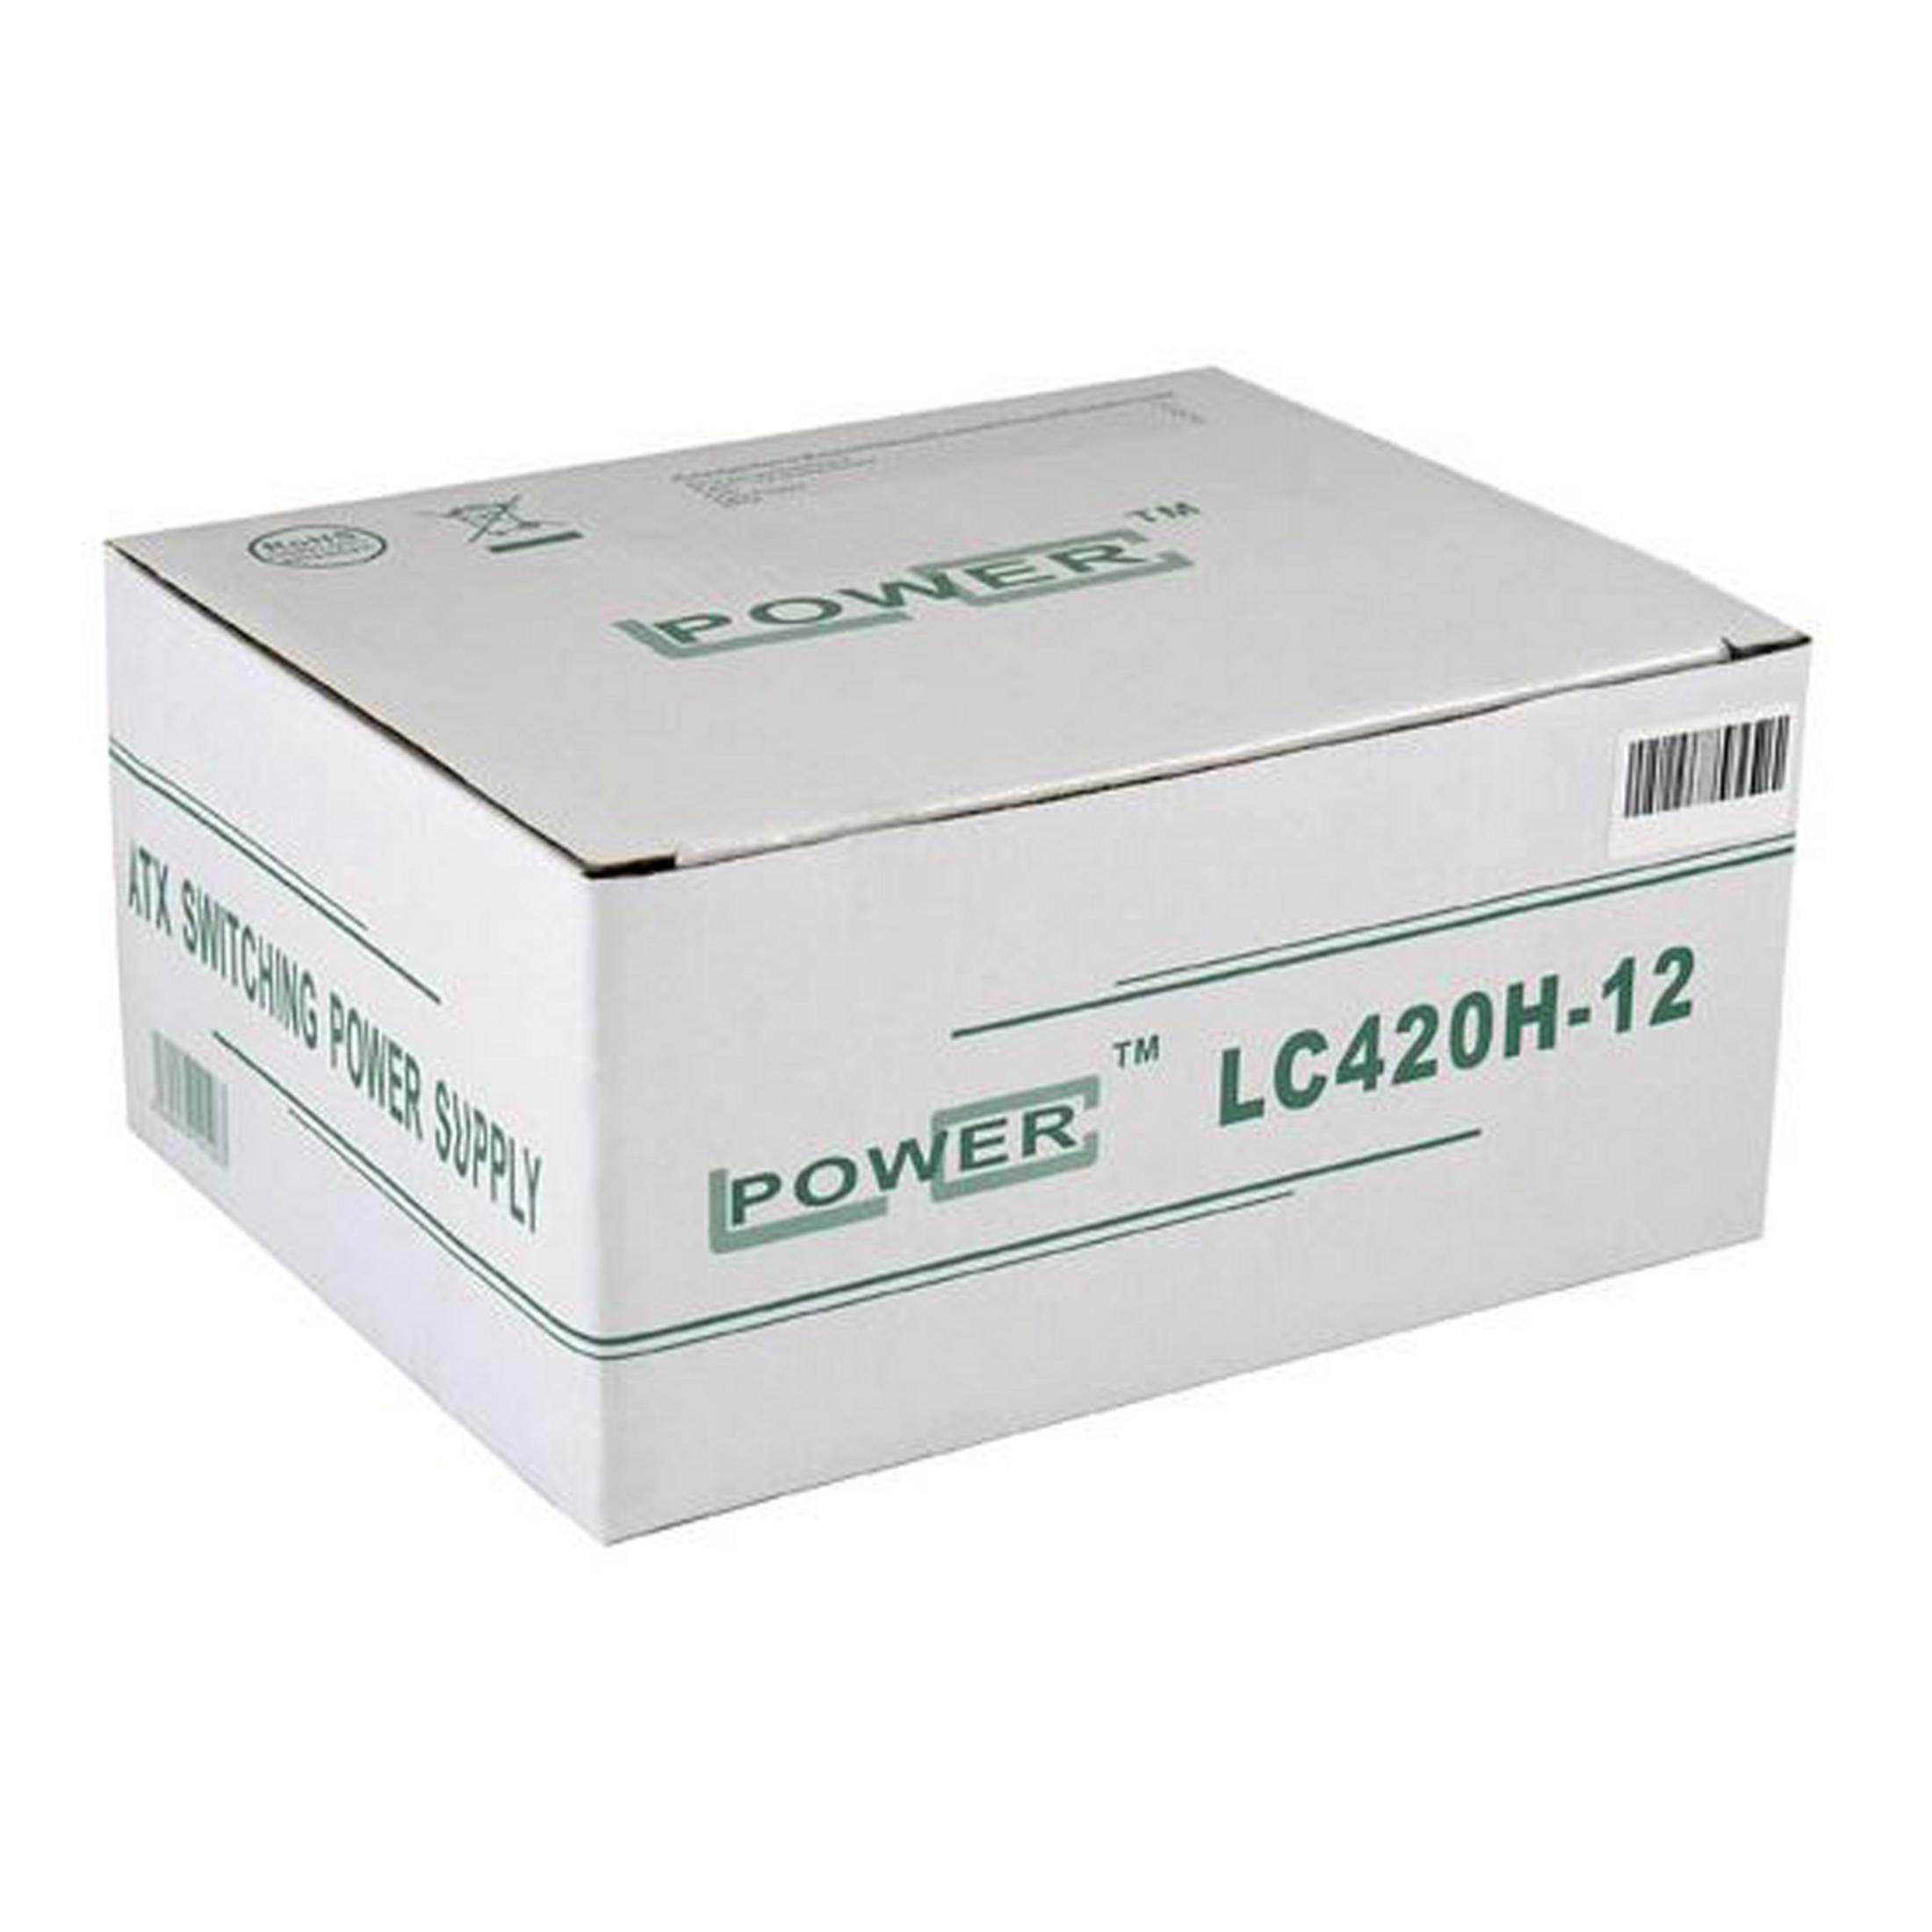 Netzteil LC LC420H-12 PC POWER 420 Watt V1.3